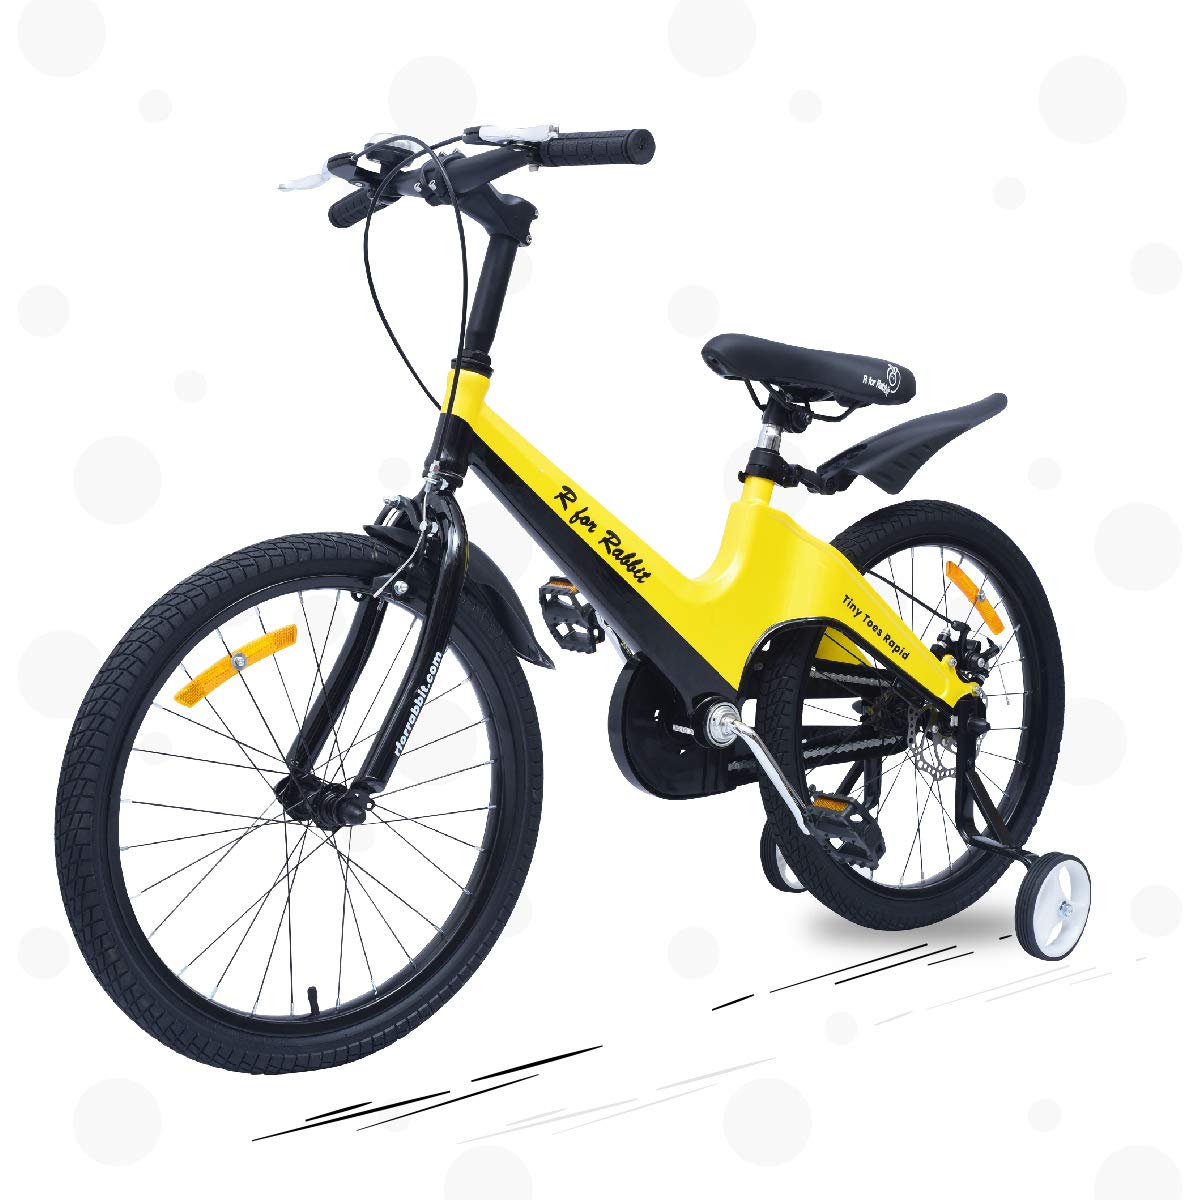 Amazon Deal: बच्चों के लिये खरीदें सबसे बढ़िया ब्रांड की साइकिल, 6 हजार में मिल रही है R for Rabbit cycle